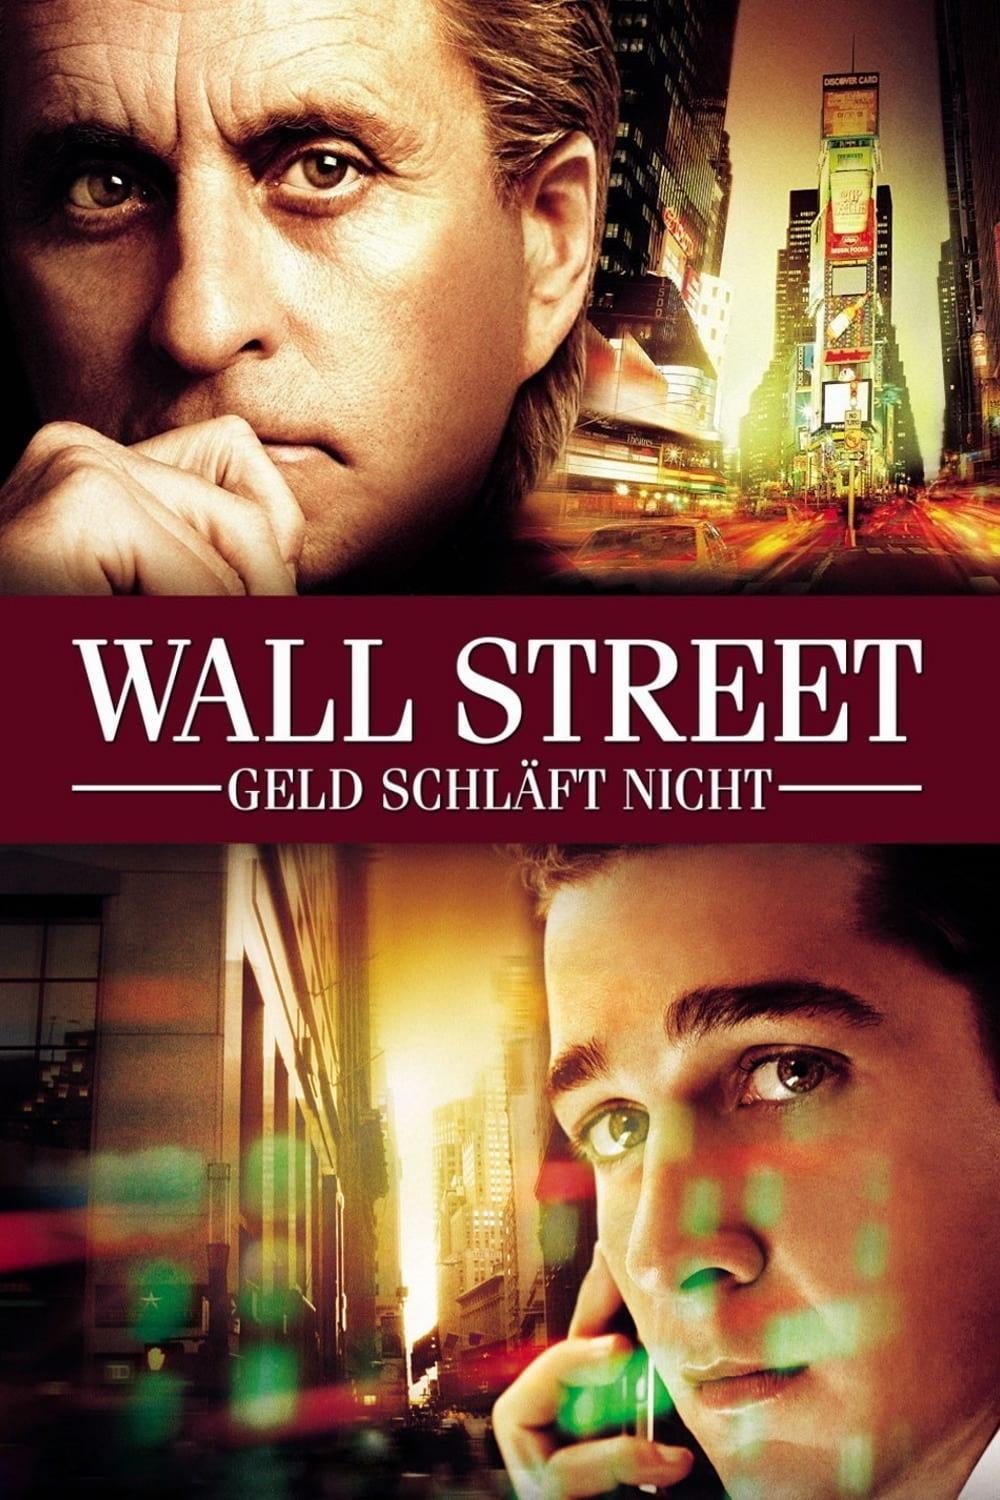 Wall Street - Geld schläft nicht poster